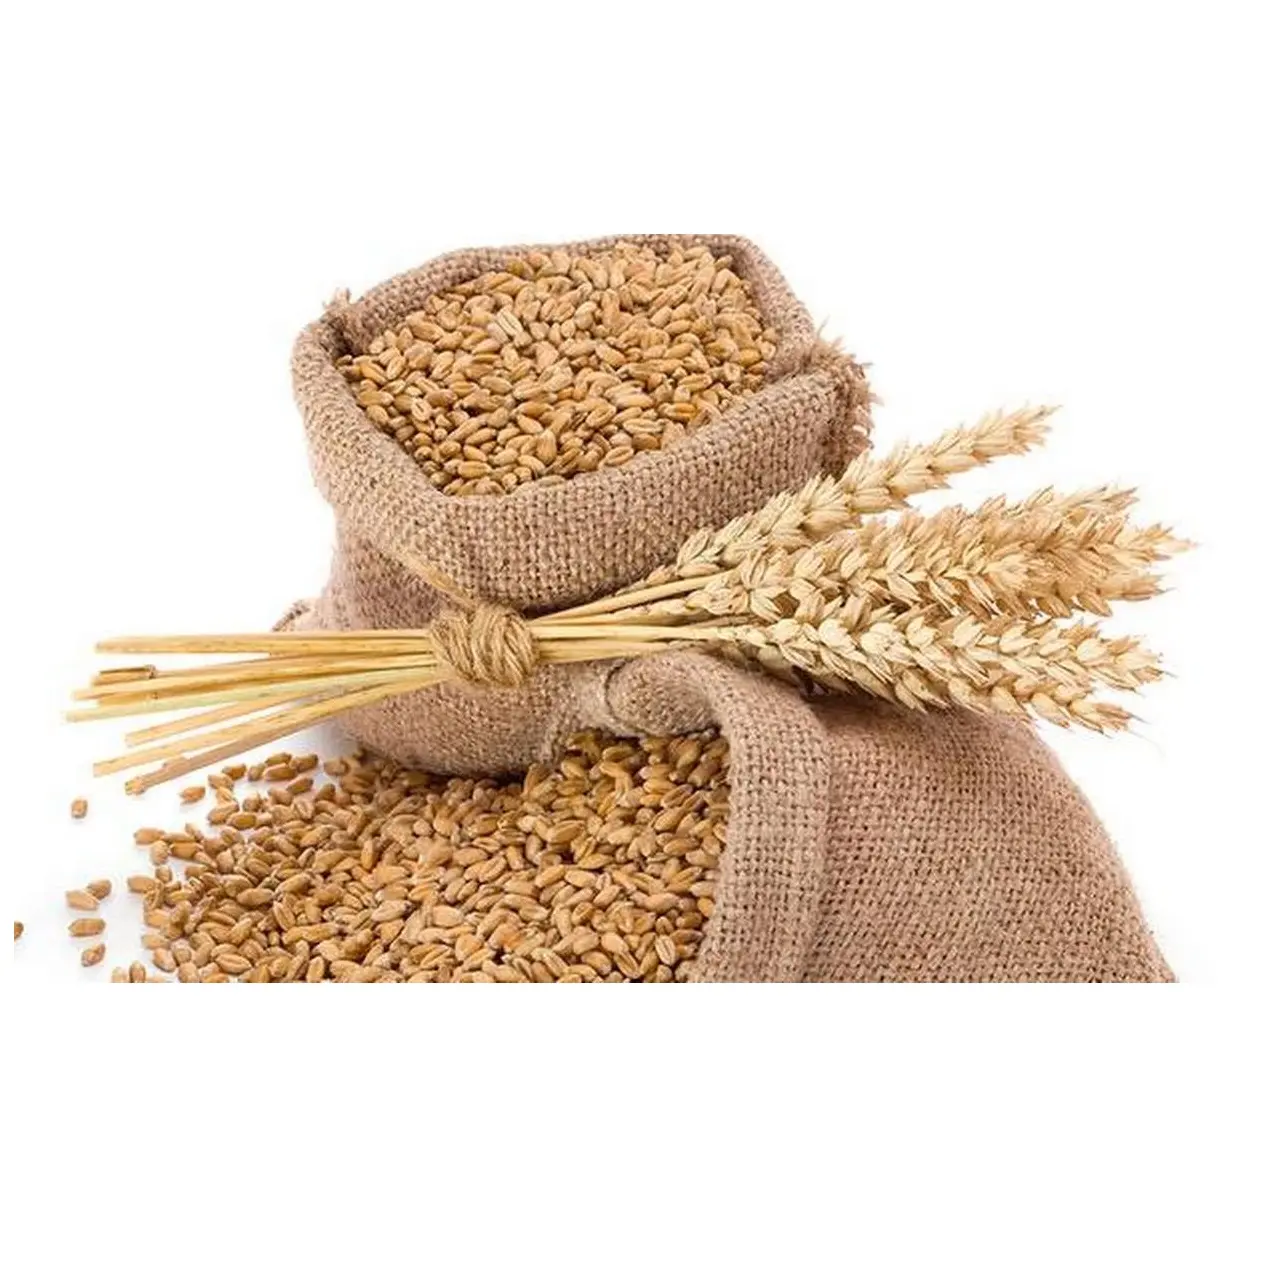 Grano de trigo orgánico Natural de primera calidad, alimento para animales, 50Kg, embalaje, semillas de trigo, granos de cereales, Alemania, venta al por mayor